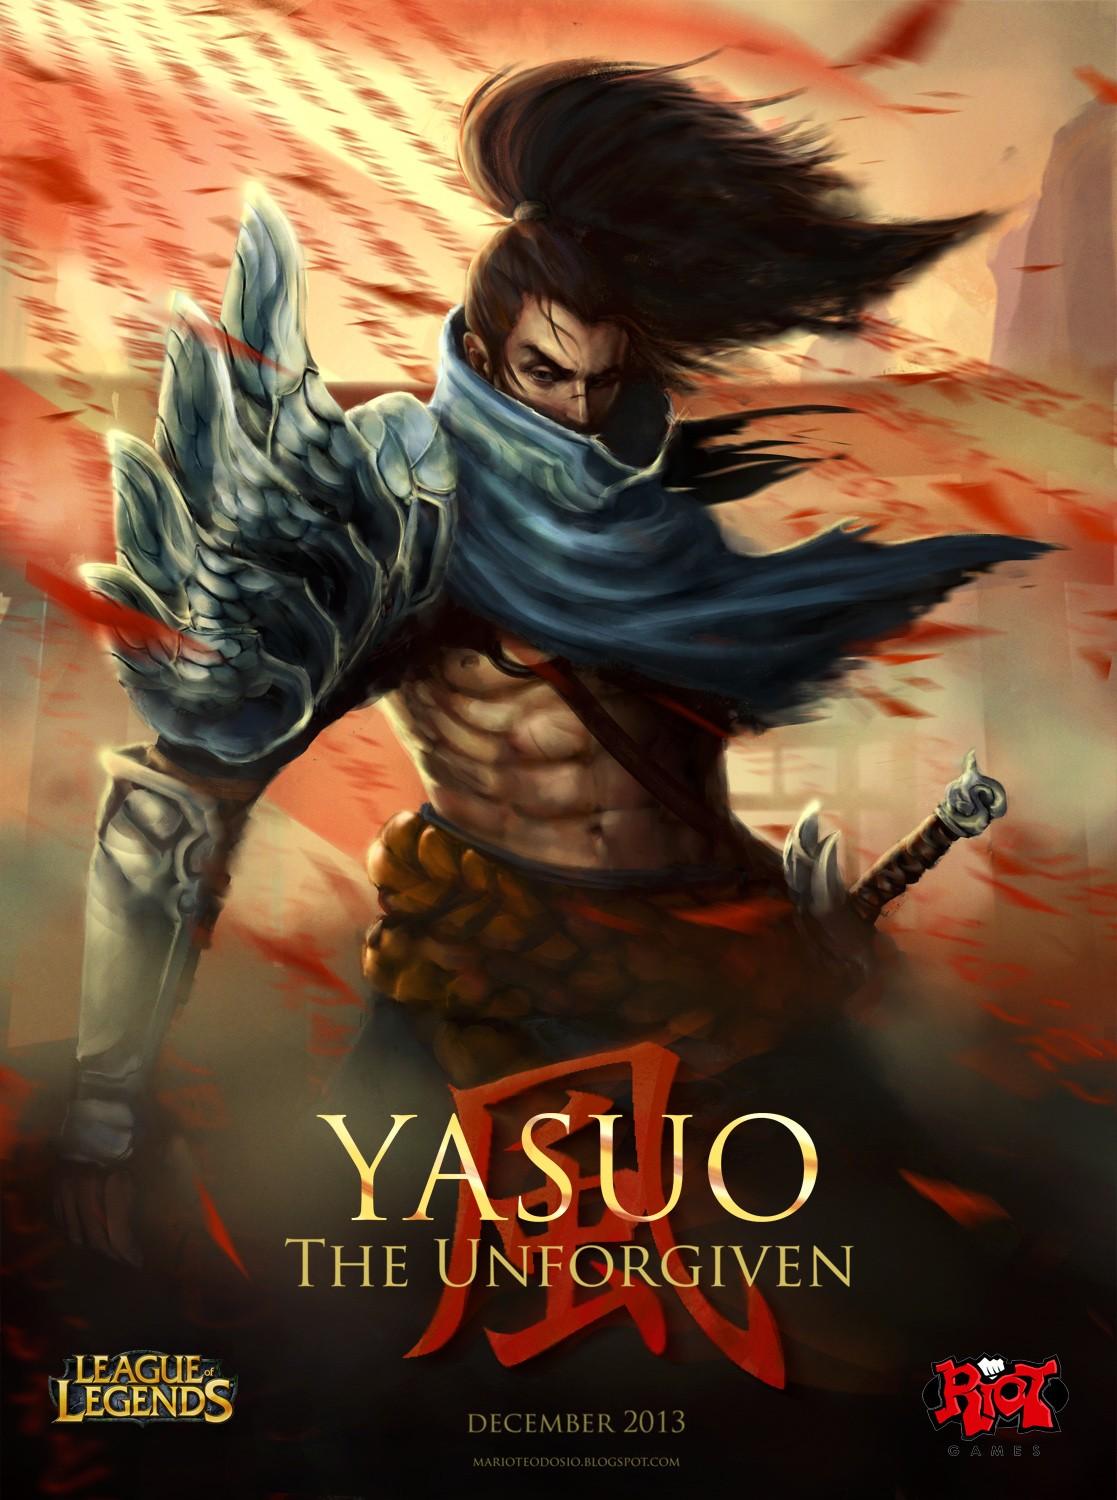 Yasuo Poster. Wallpaper & Fan Arts. League Of Legends